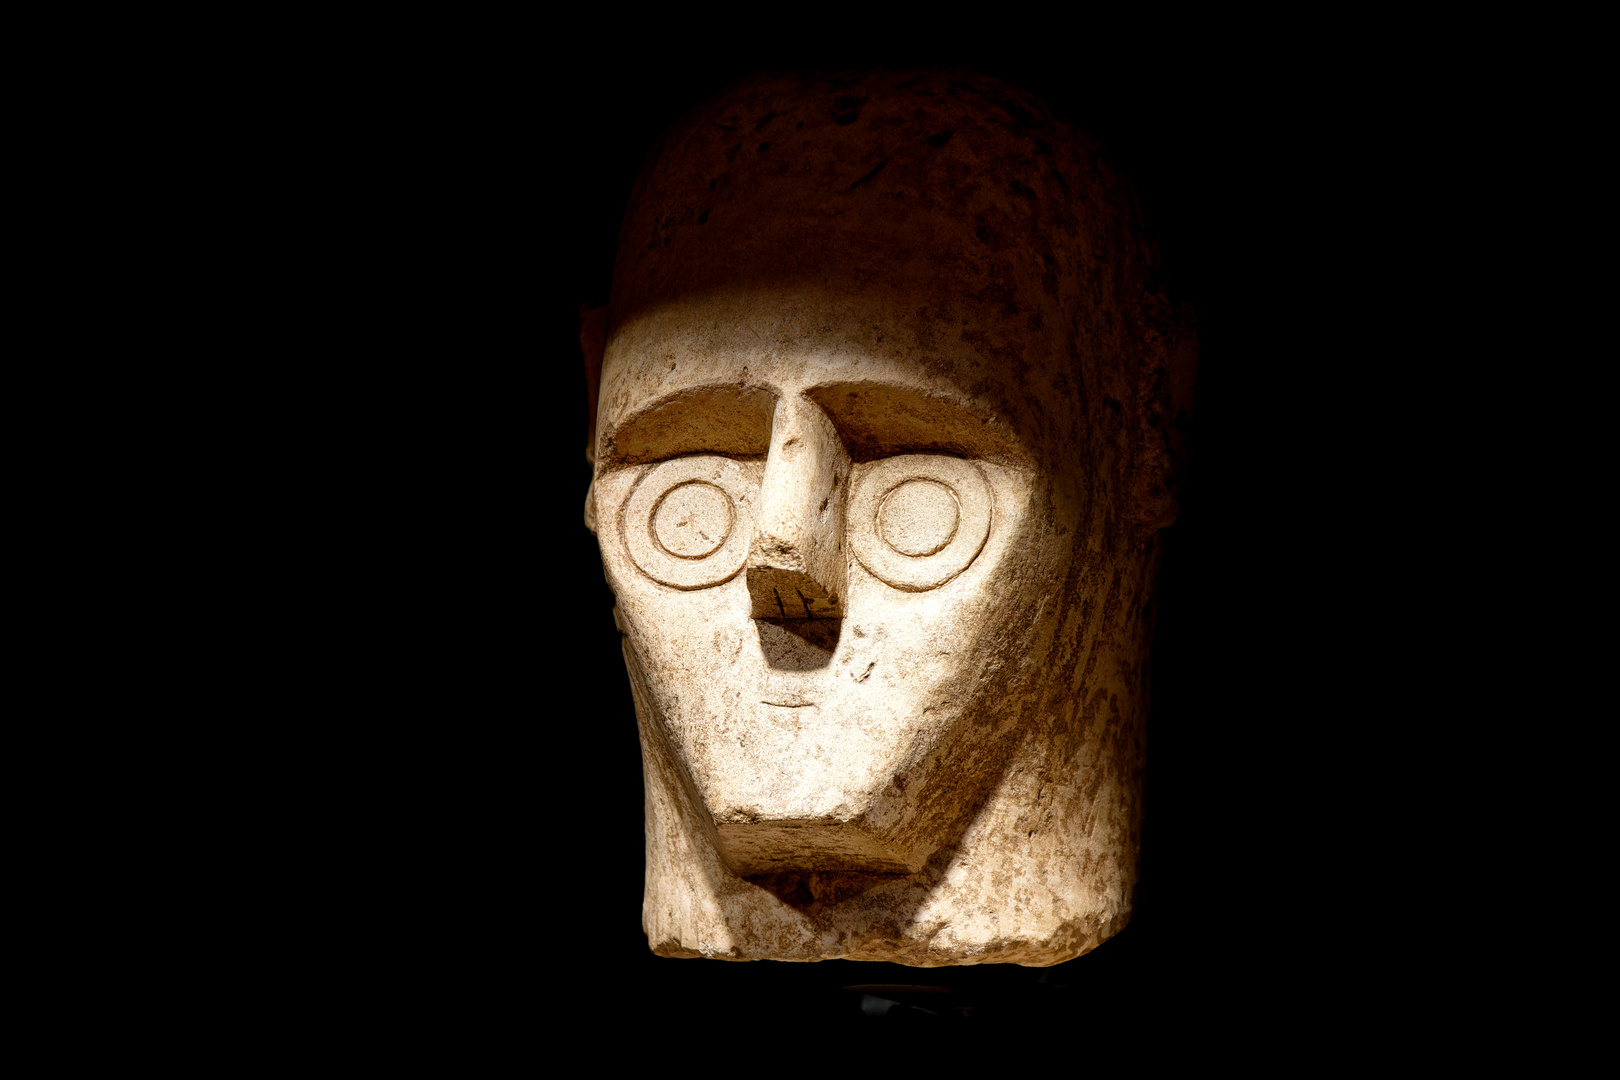 keine Roboterabbildung, sondern eine nuraghische Skulptur aus der Bronzezeit